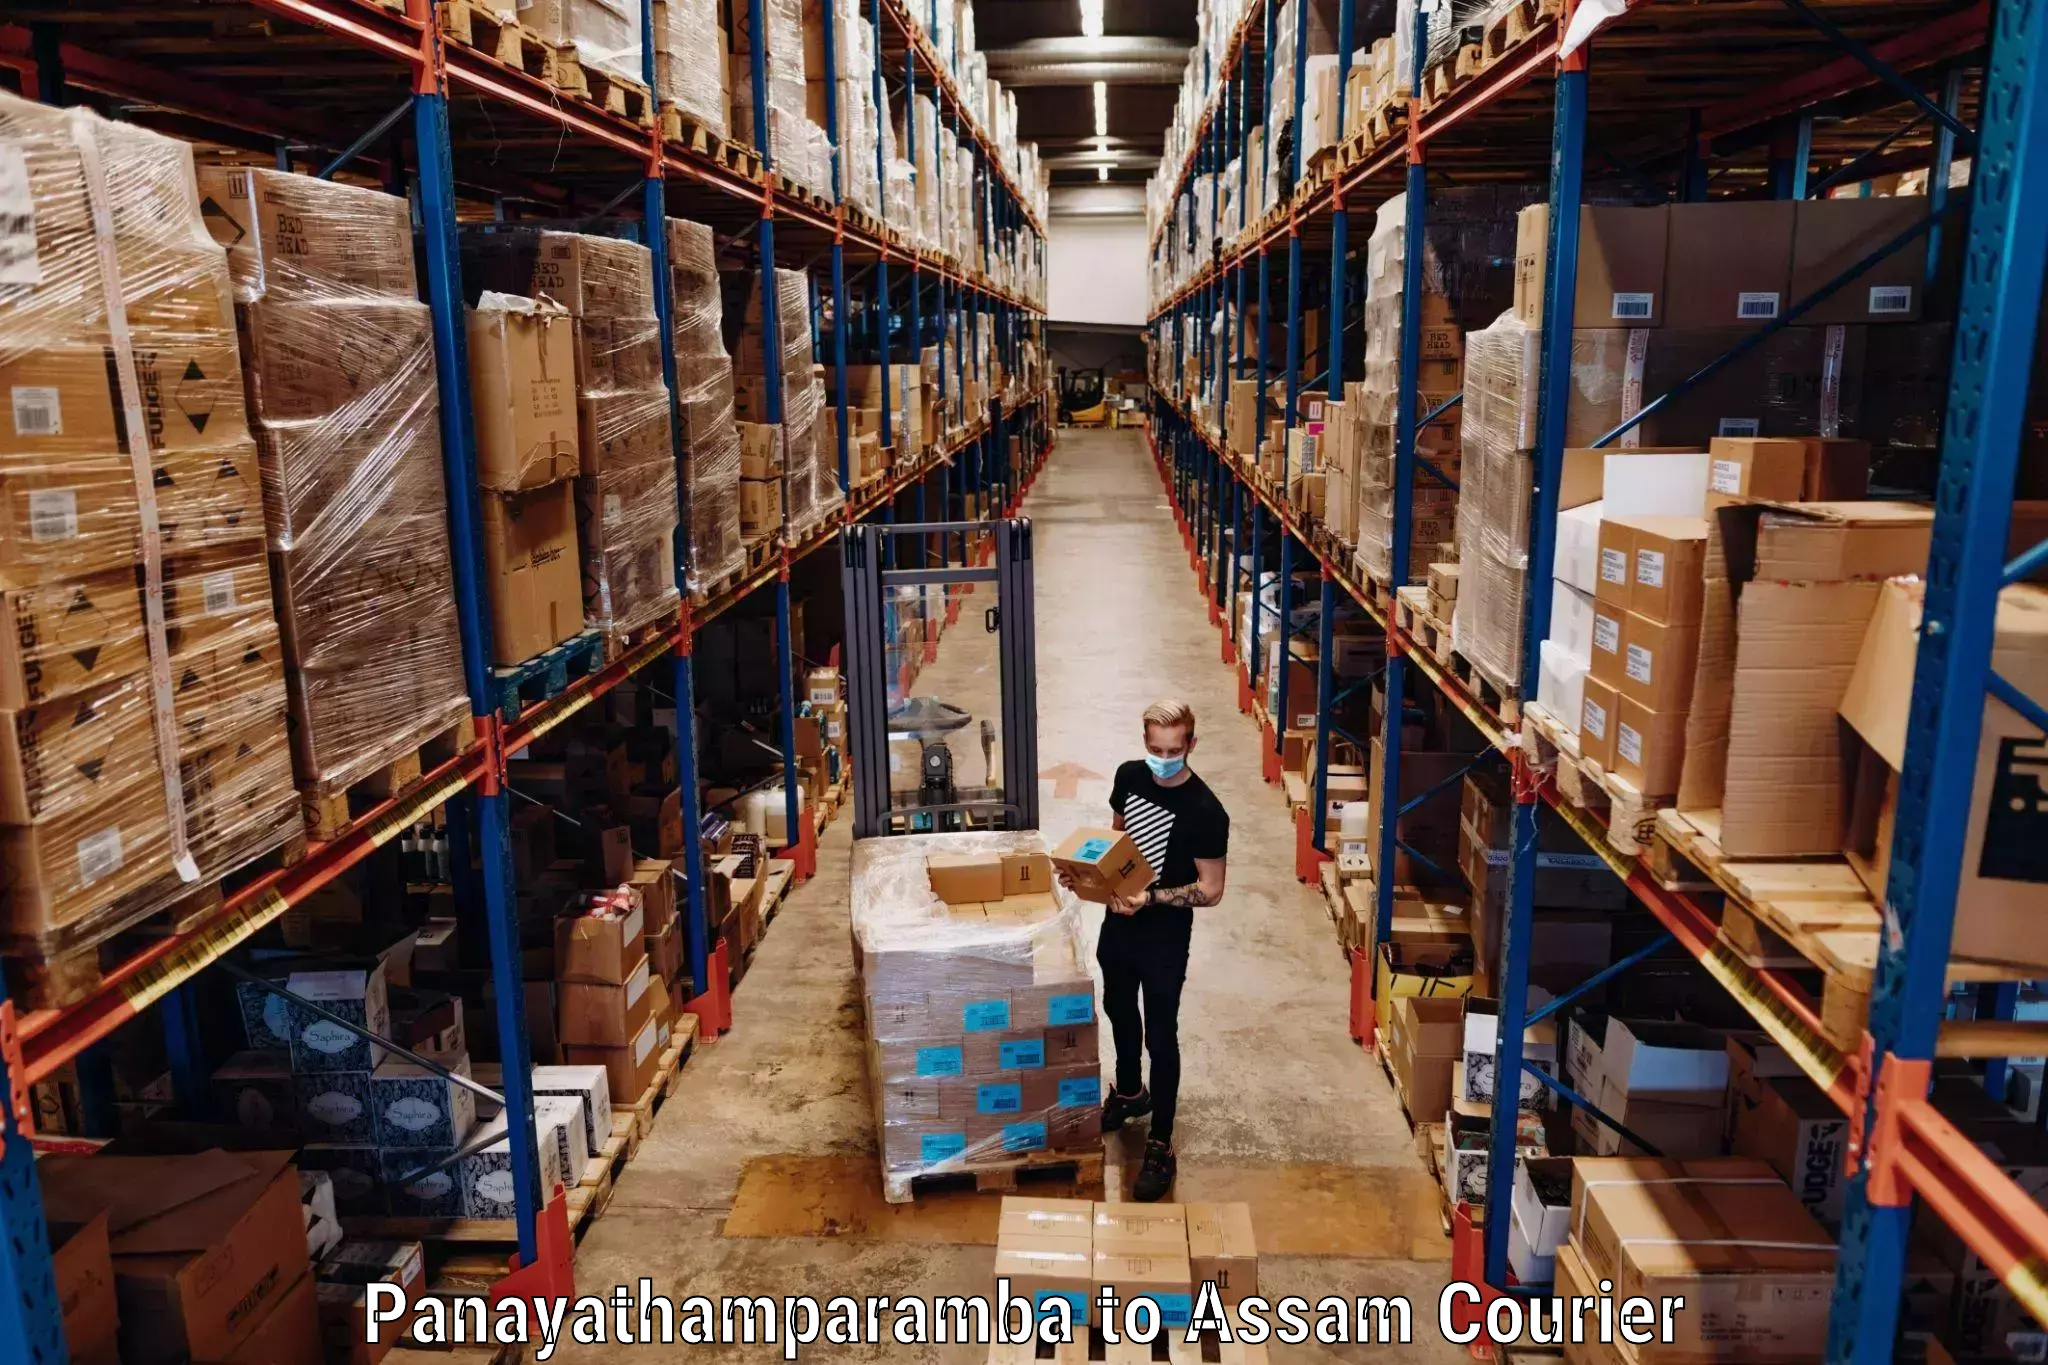 Luggage shipping specialists Panayathamparamba to Baksha Bodoland